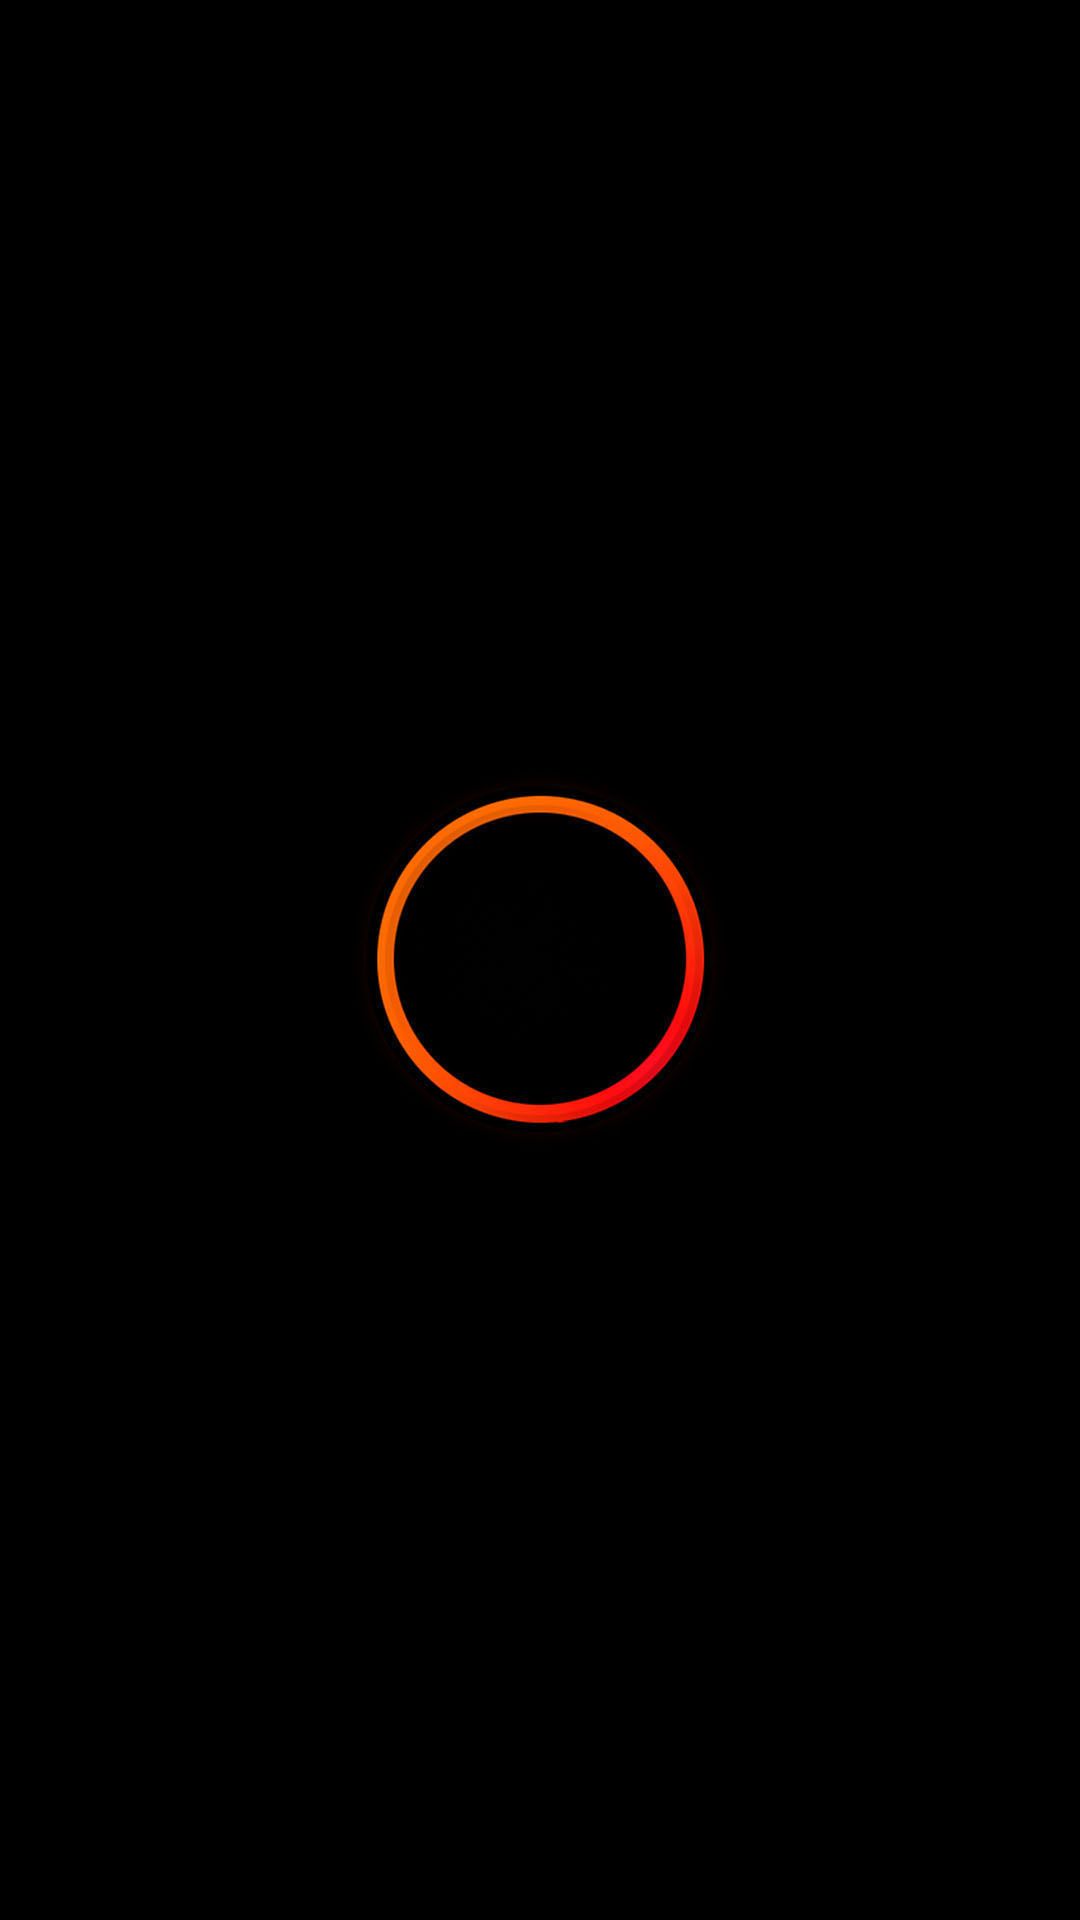 Orange Circle Minimal Android Wallpaper free download